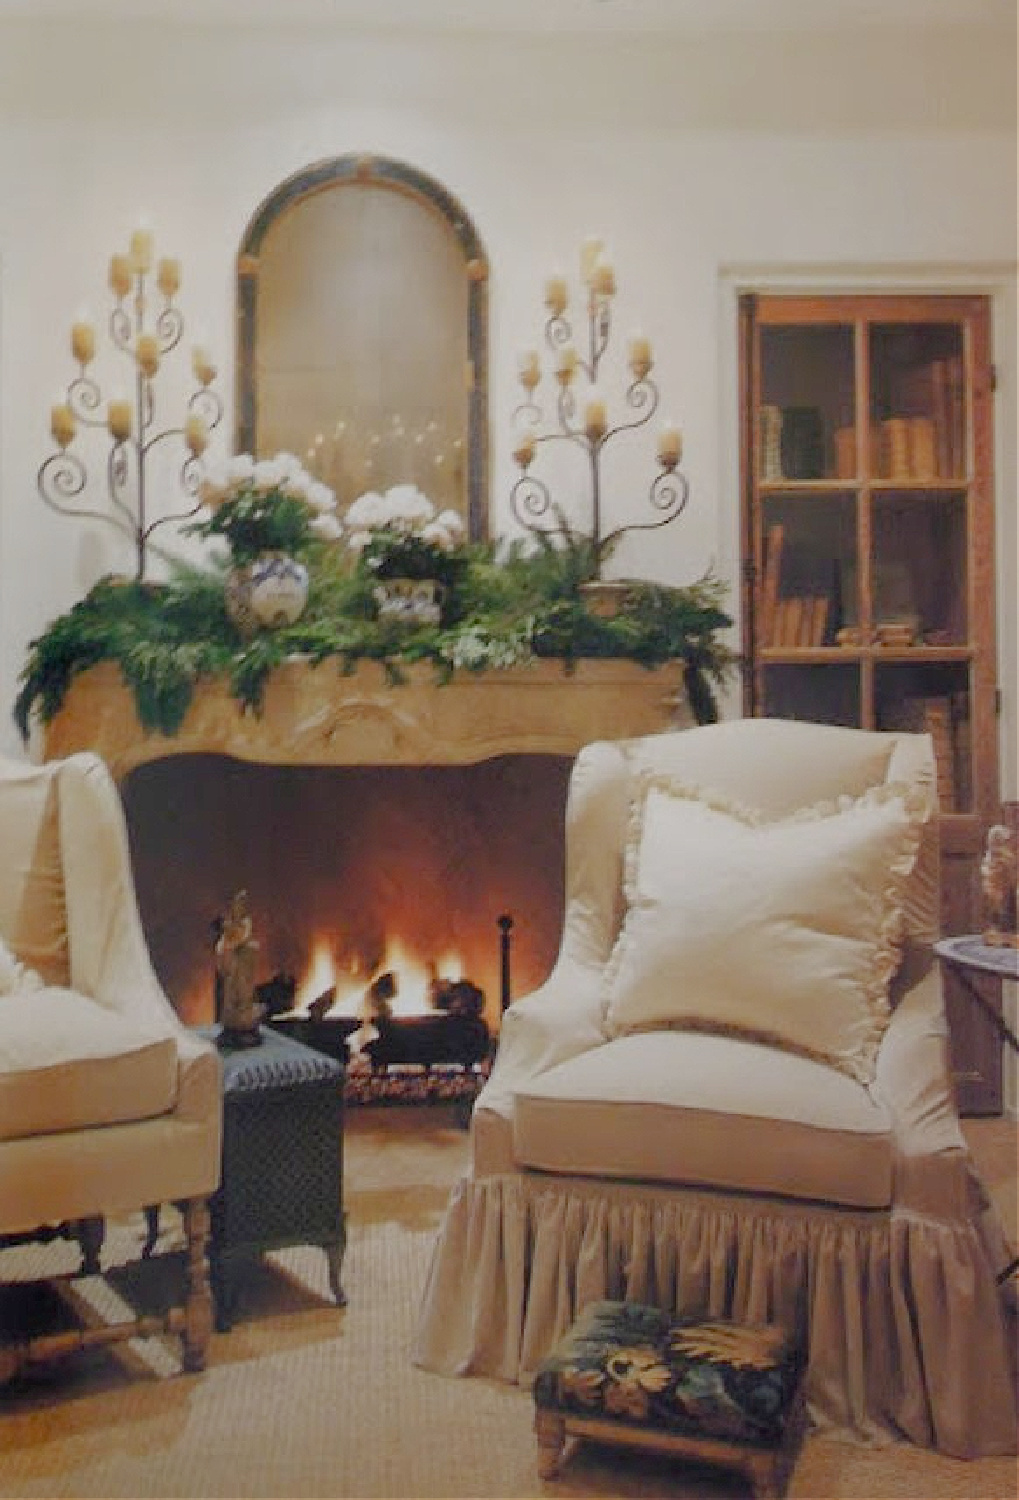 Pamela Pierce Christmas decor in her own home - Veranda. #pamelapierce #modernfrench #frenchcountrychristmas